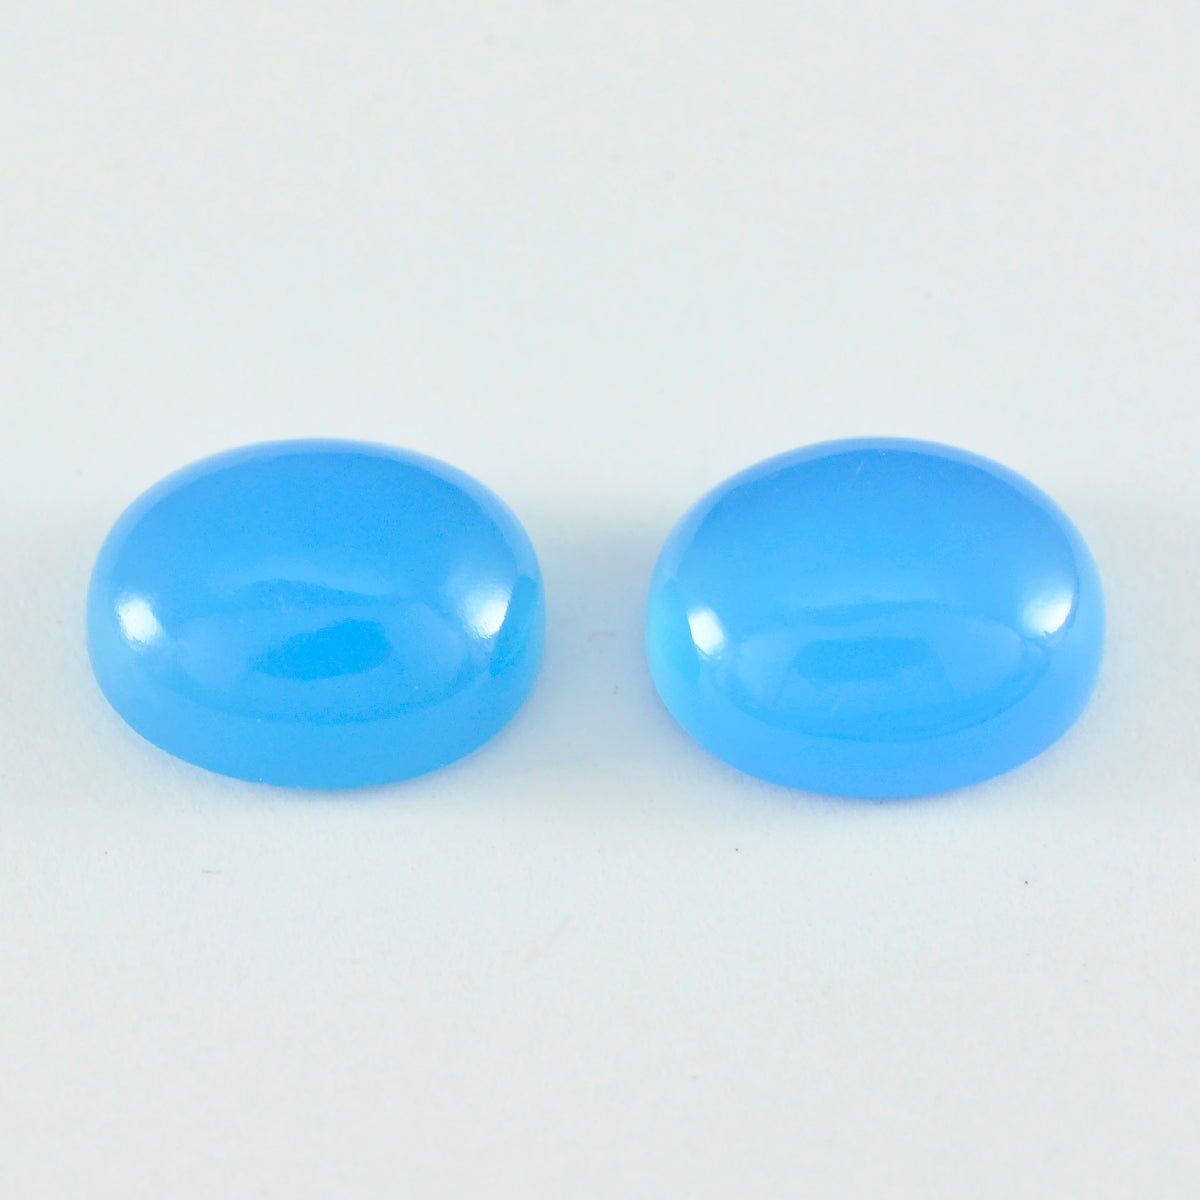 Riyogems 1 Stück blauer Chalcedon-Cabochon, 8 x 10 mm, ovale Form, toller, hochwertiger, loser Edelstein